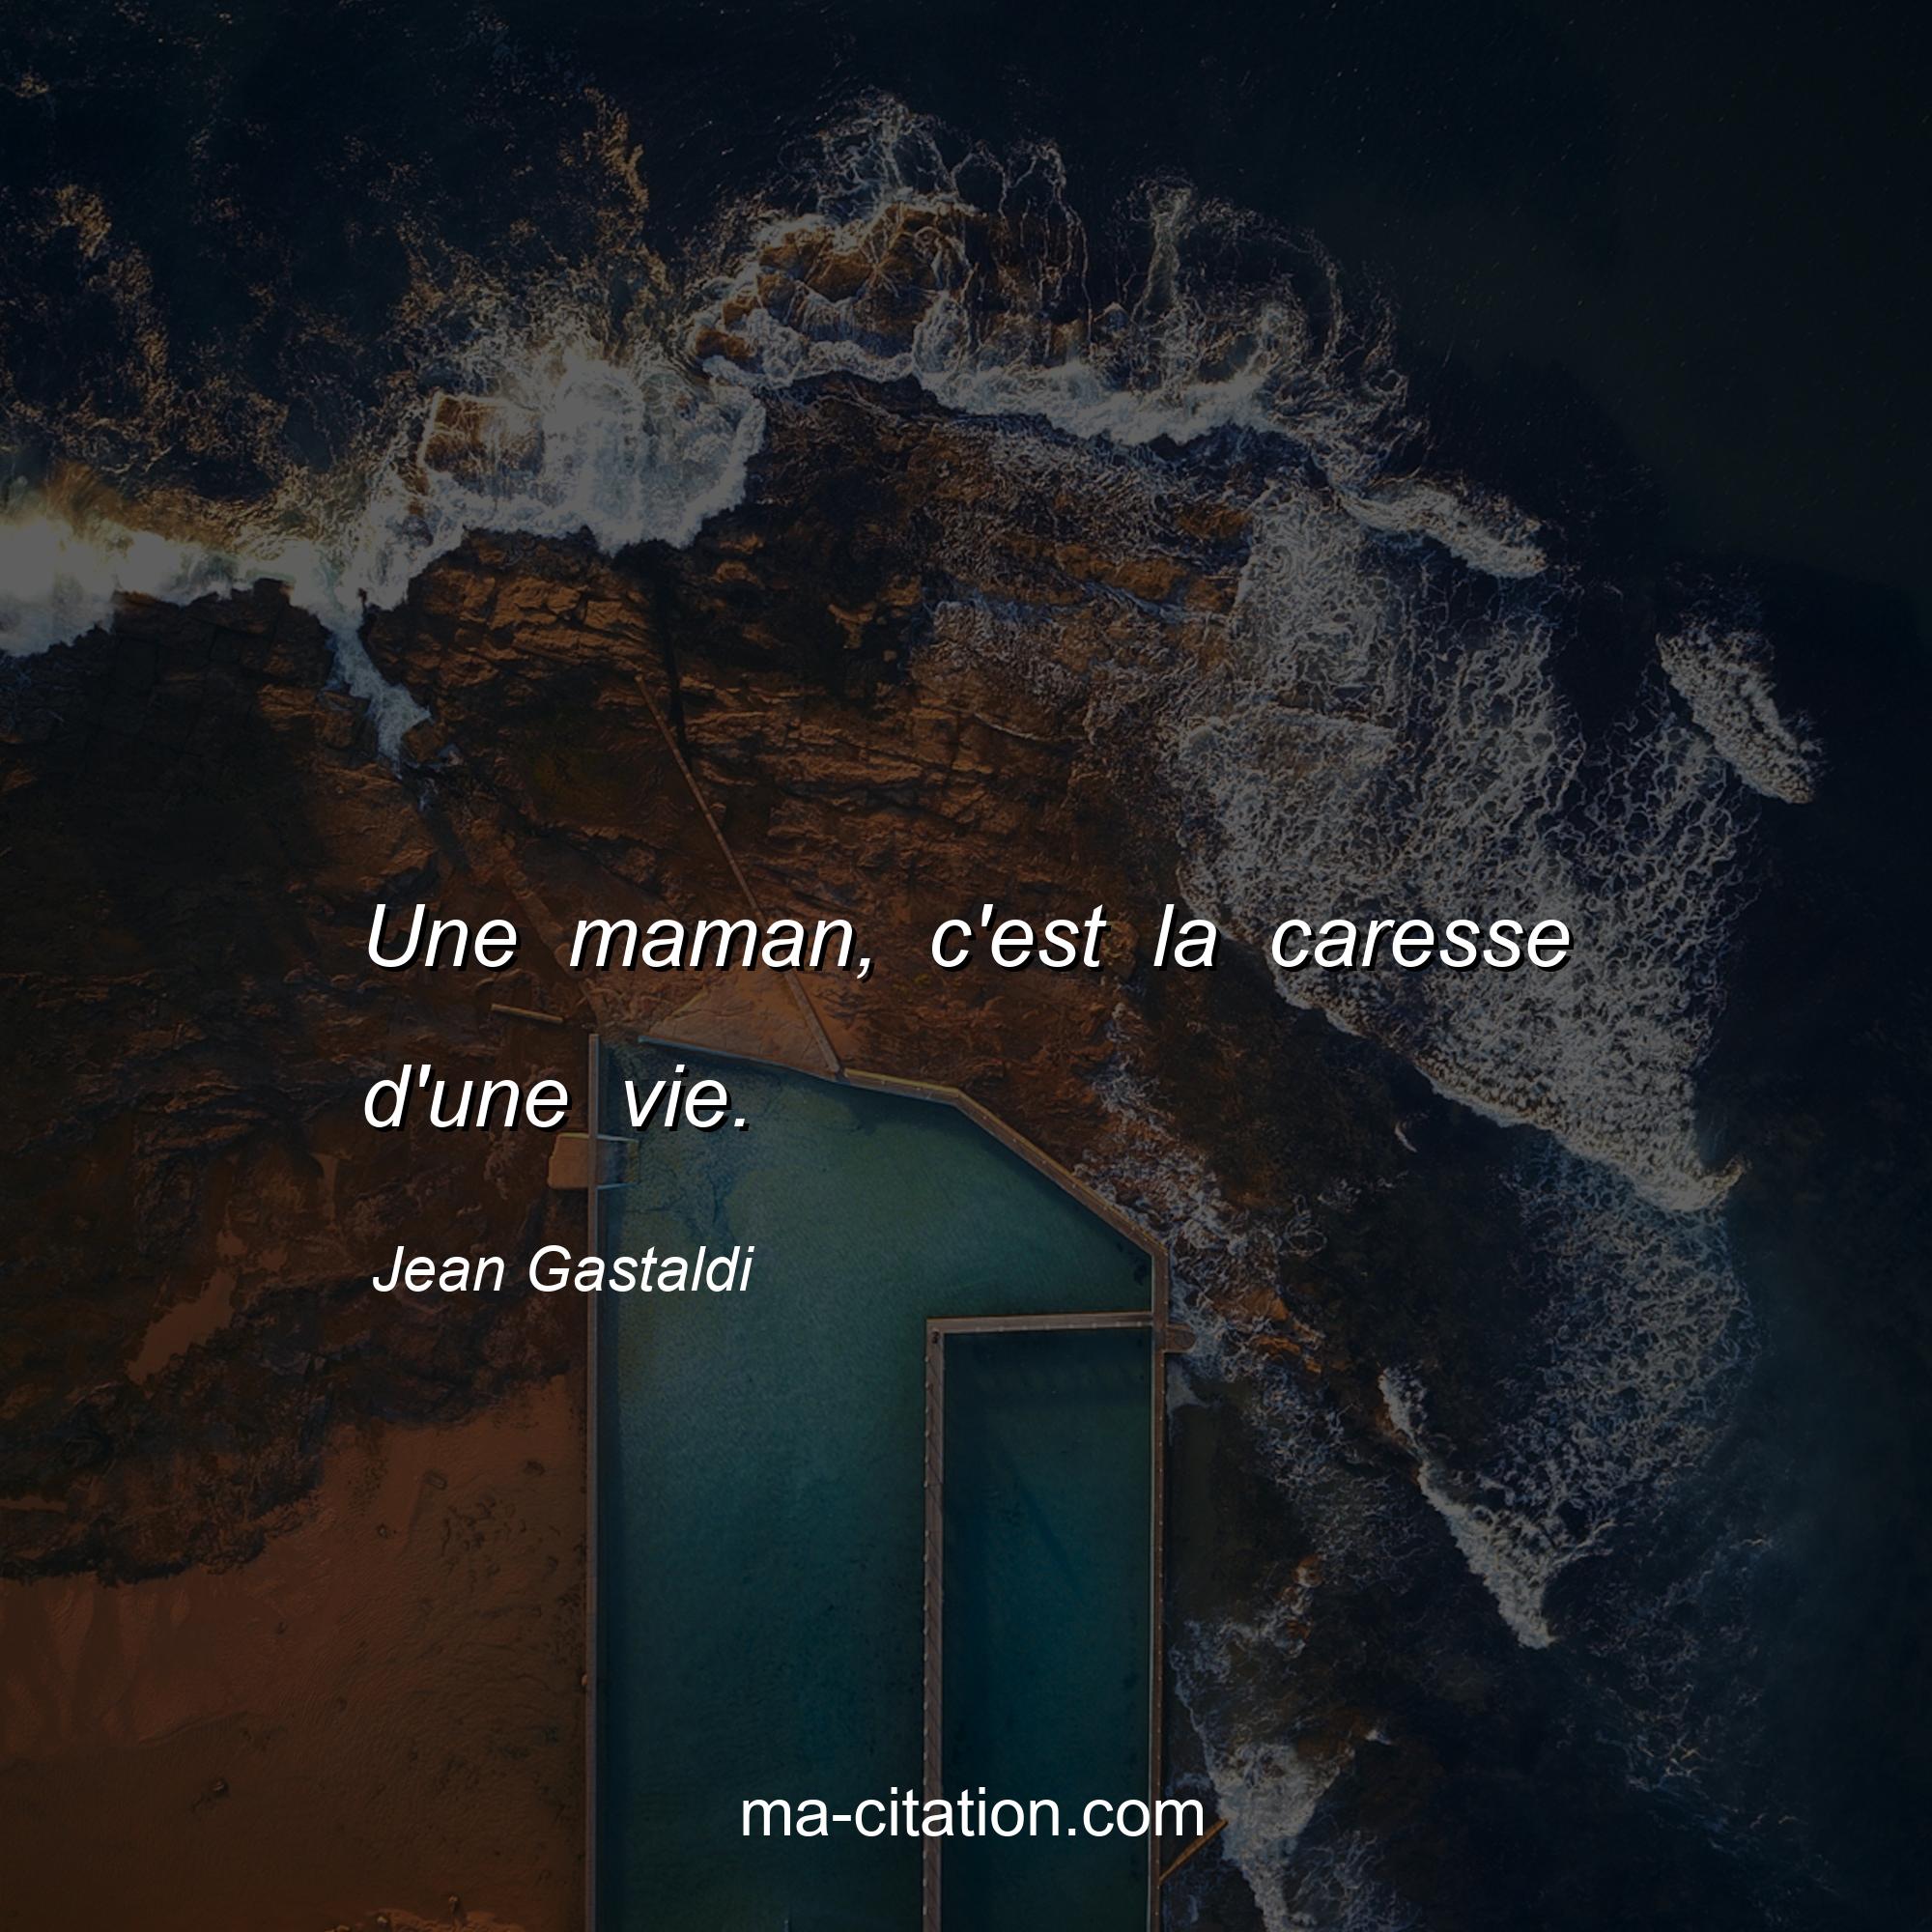 Jean Gastaldi : Une maman, c'est la caresse d'une vie.